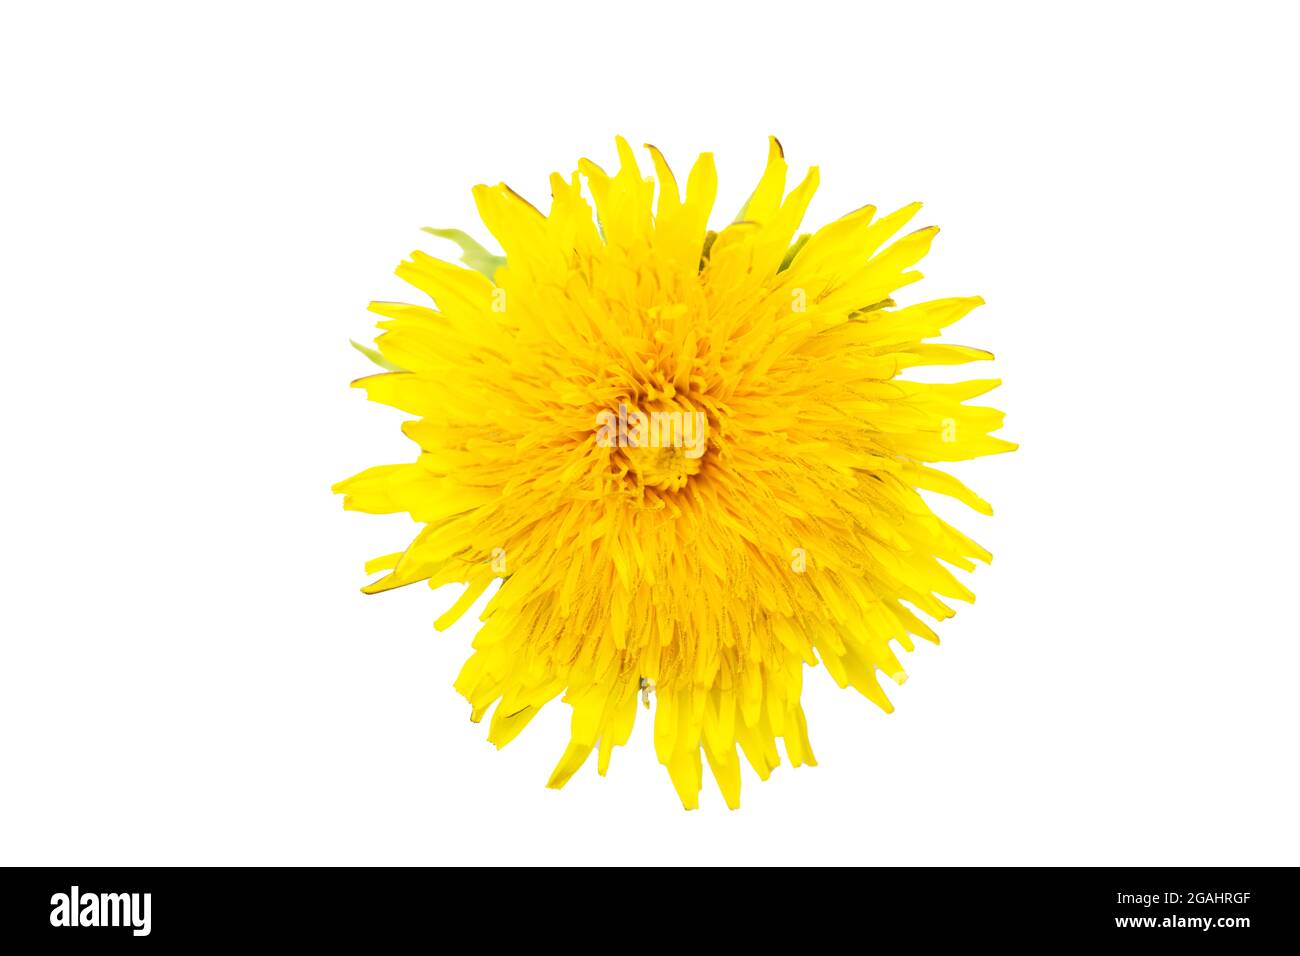 Un pissenlit jaune fleuri isolé sur fond blanc, gros plan. Peut être utilisé comme élément de conception. Banque D'Images